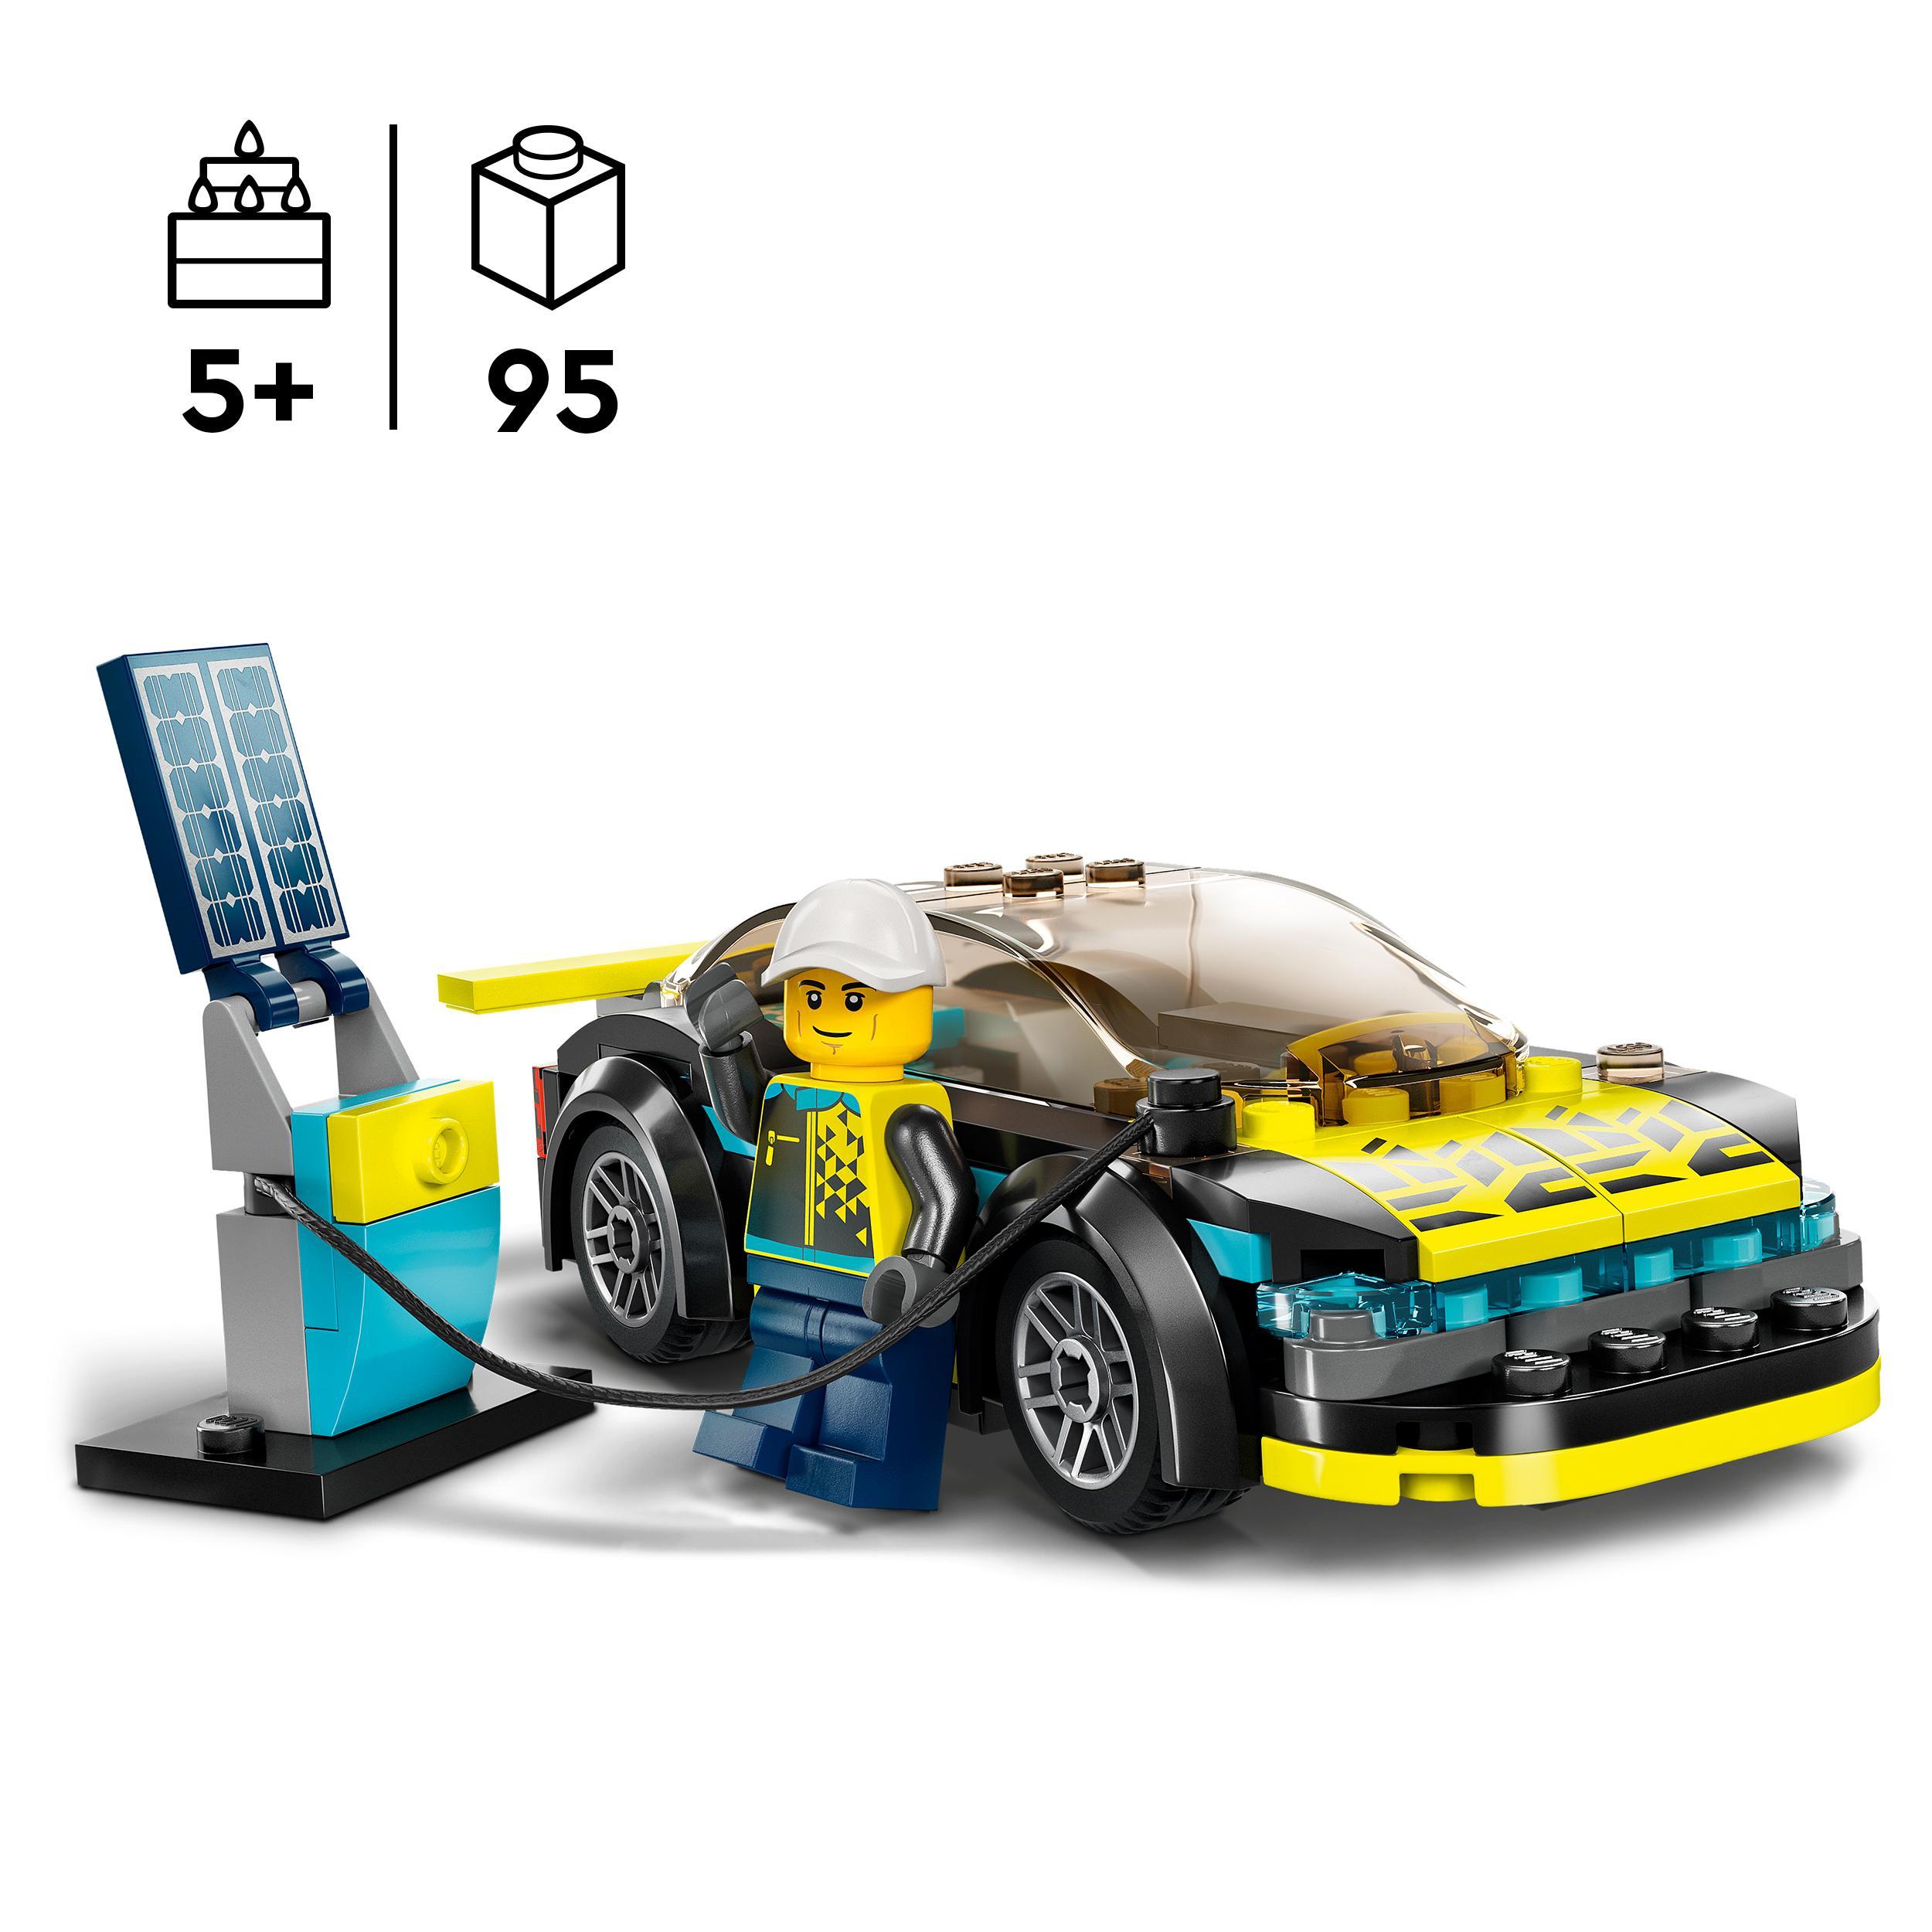 Lego city 60383 auto sportiva elettrica, macchina giocattolo per bambini dai 5 anni, set supercar con pilota da corsa - LEGO CITY